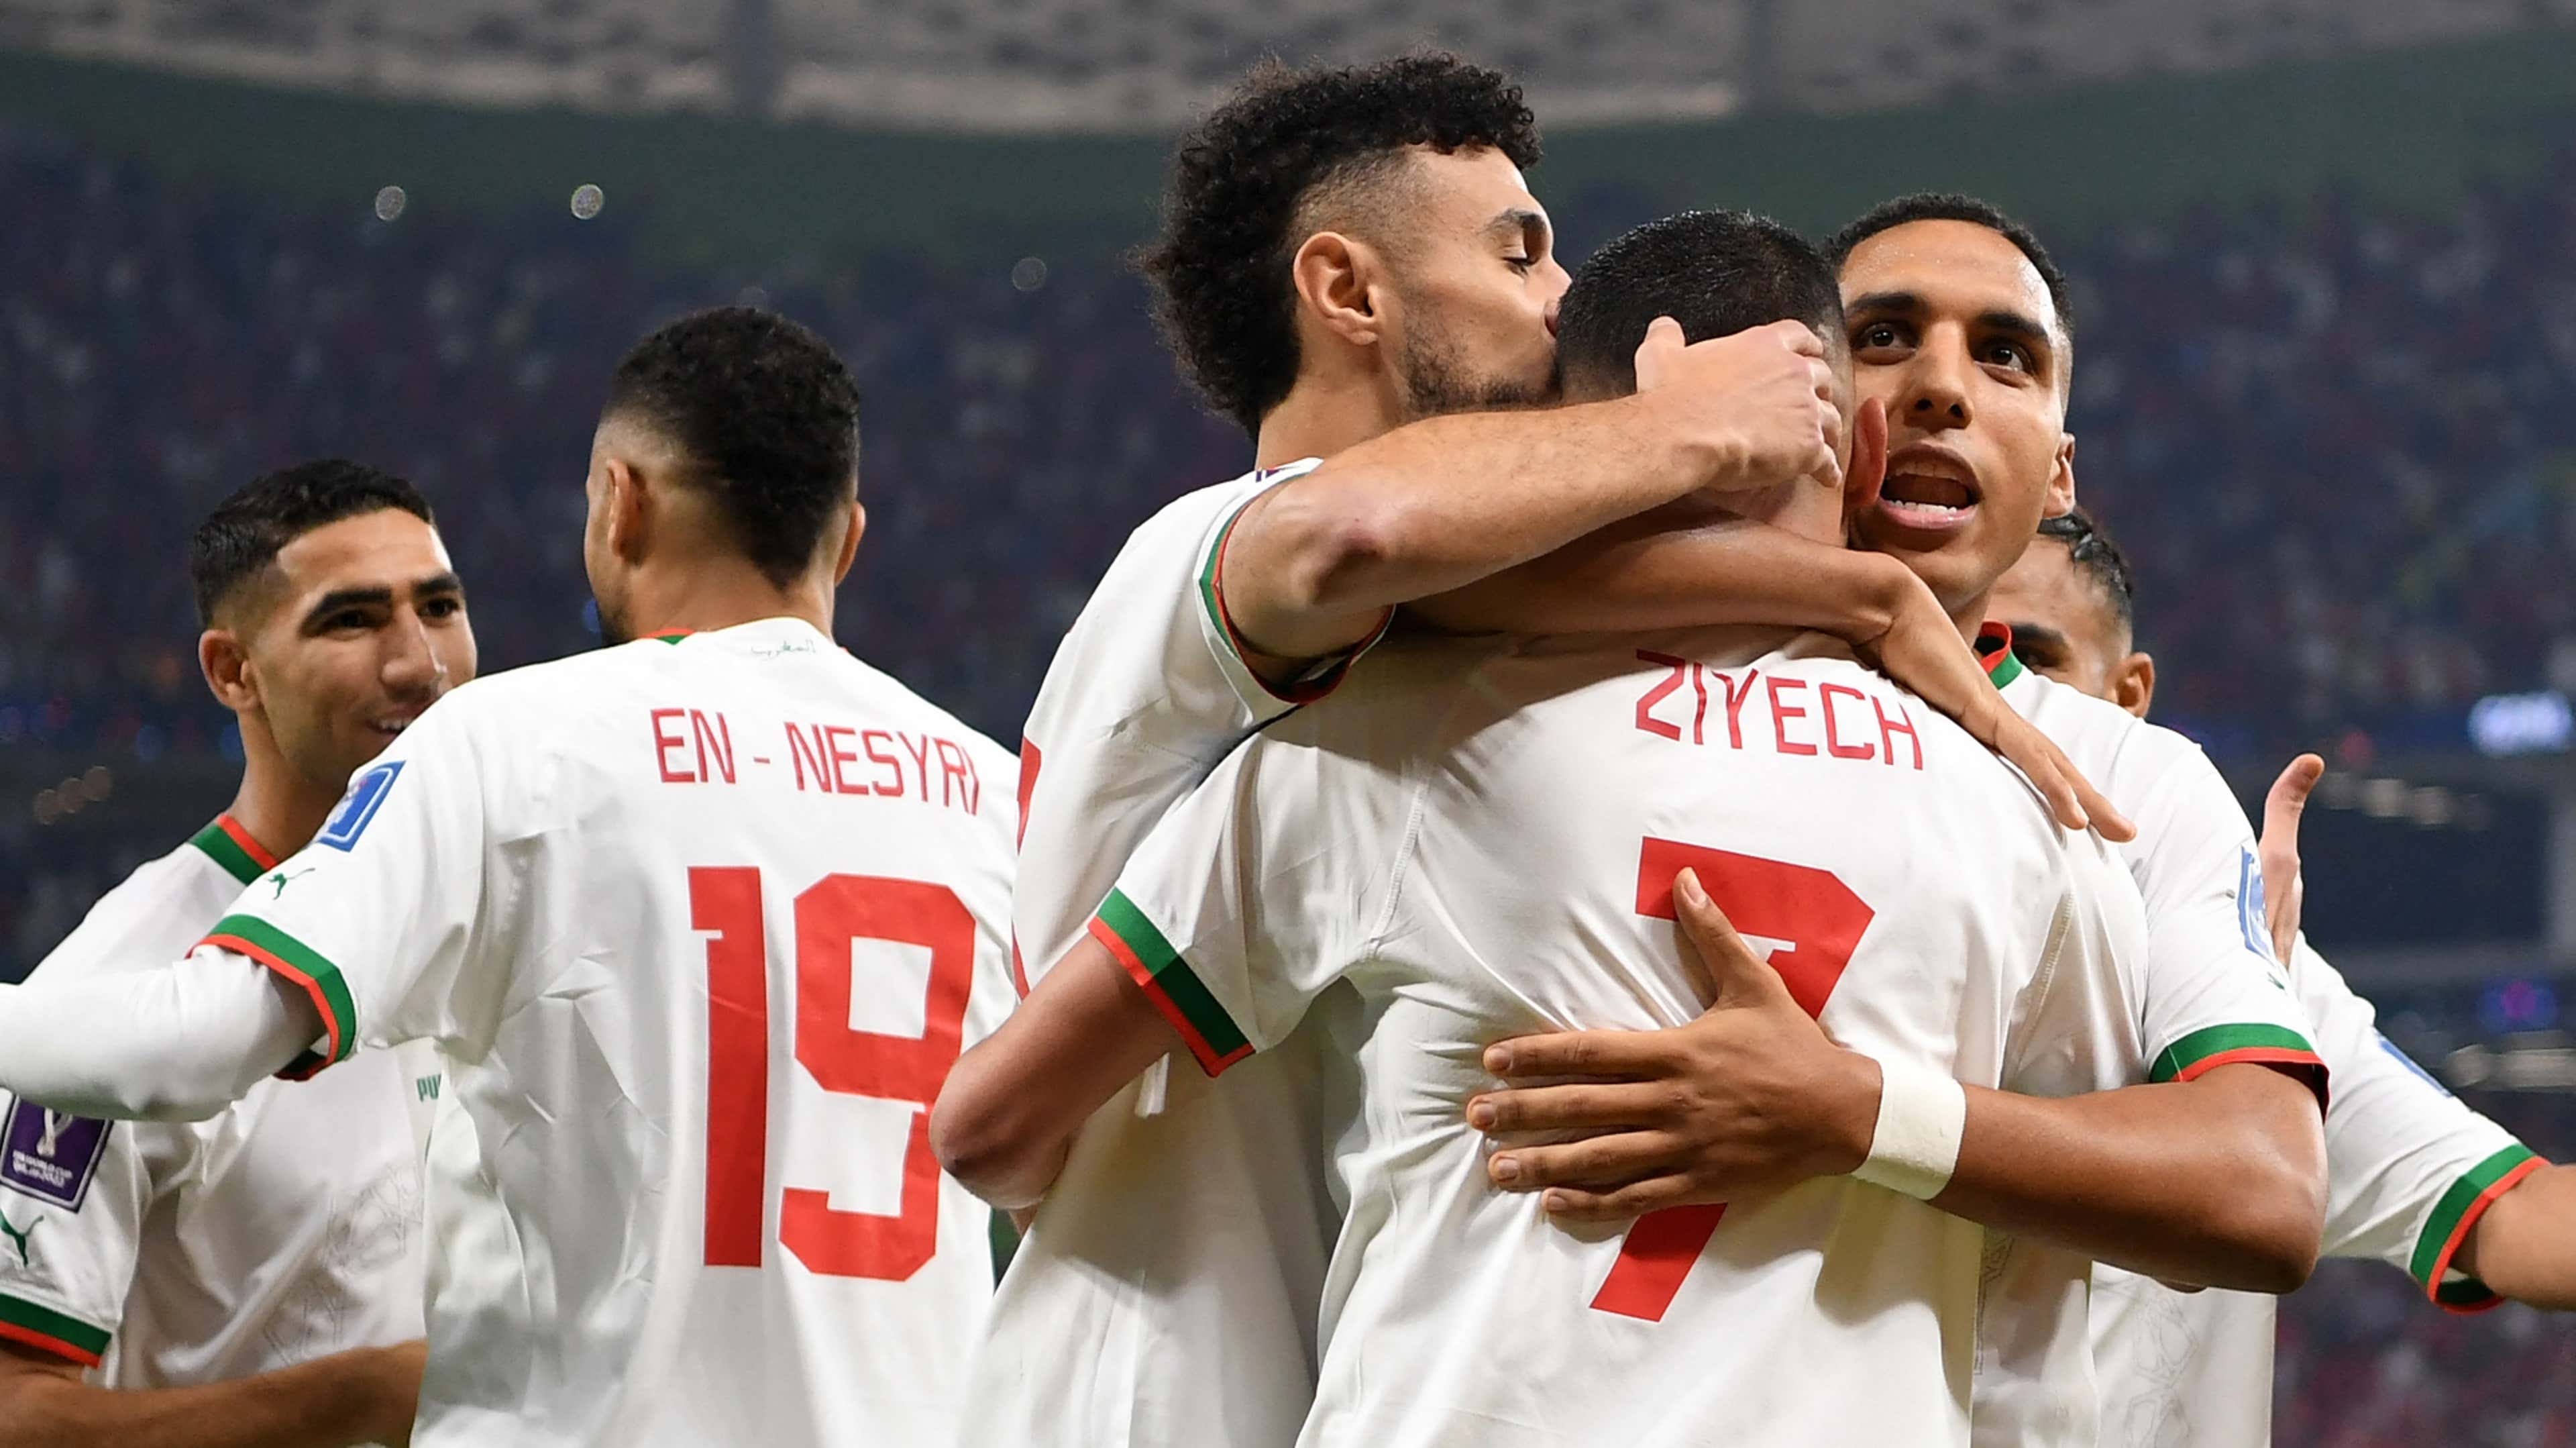 Marrocos x Espanha tem primeiro tempo meia boca; web critica